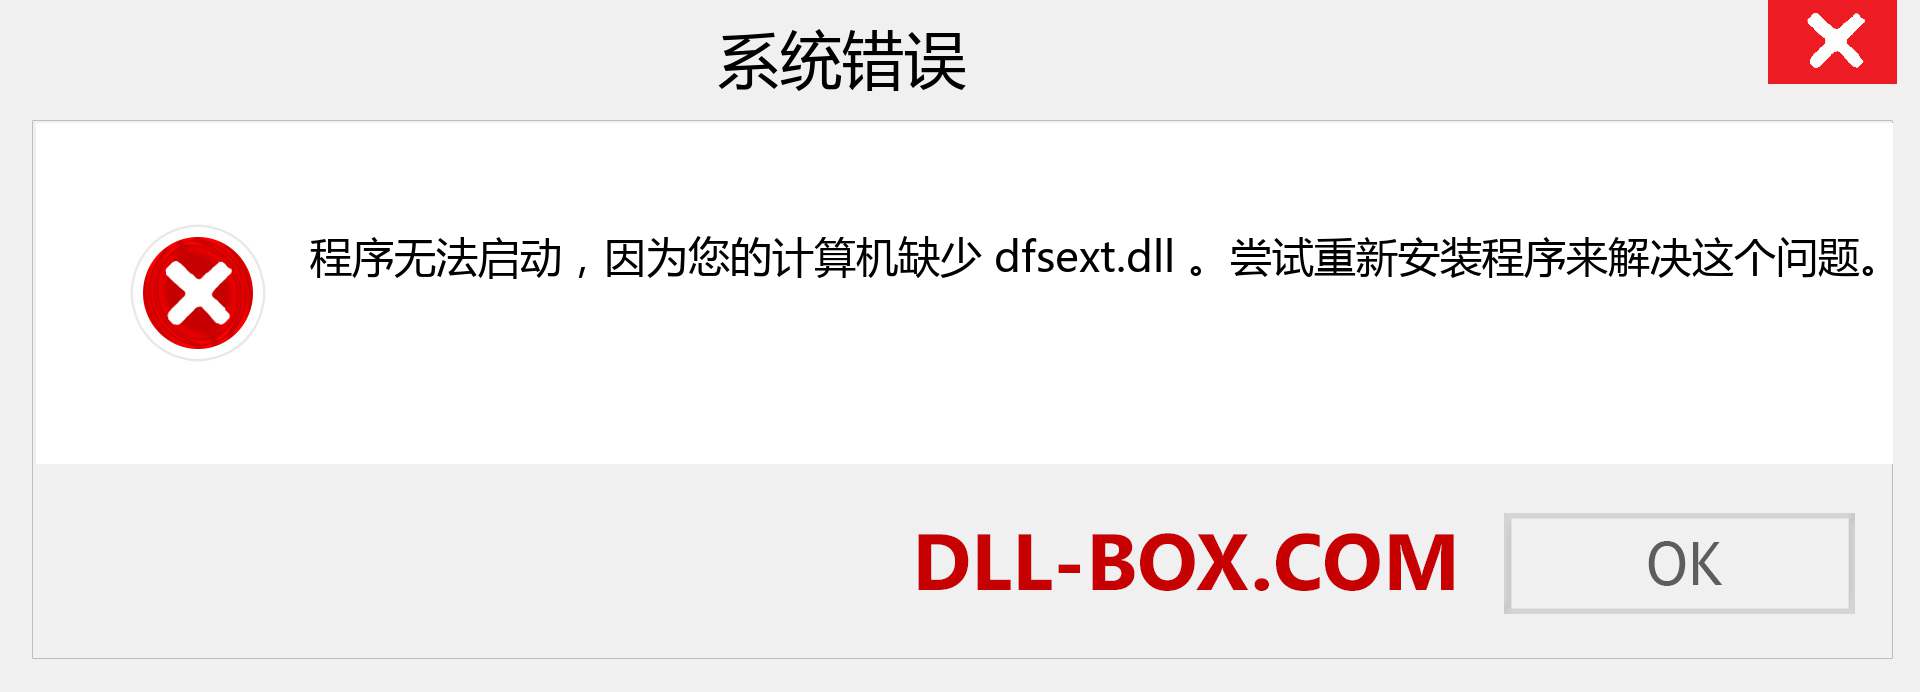 dfsext.dll 文件丢失？。 适用于 Windows 7、8、10 的下载 - 修复 Windows、照片、图像上的 dfsext dll 丢失错误